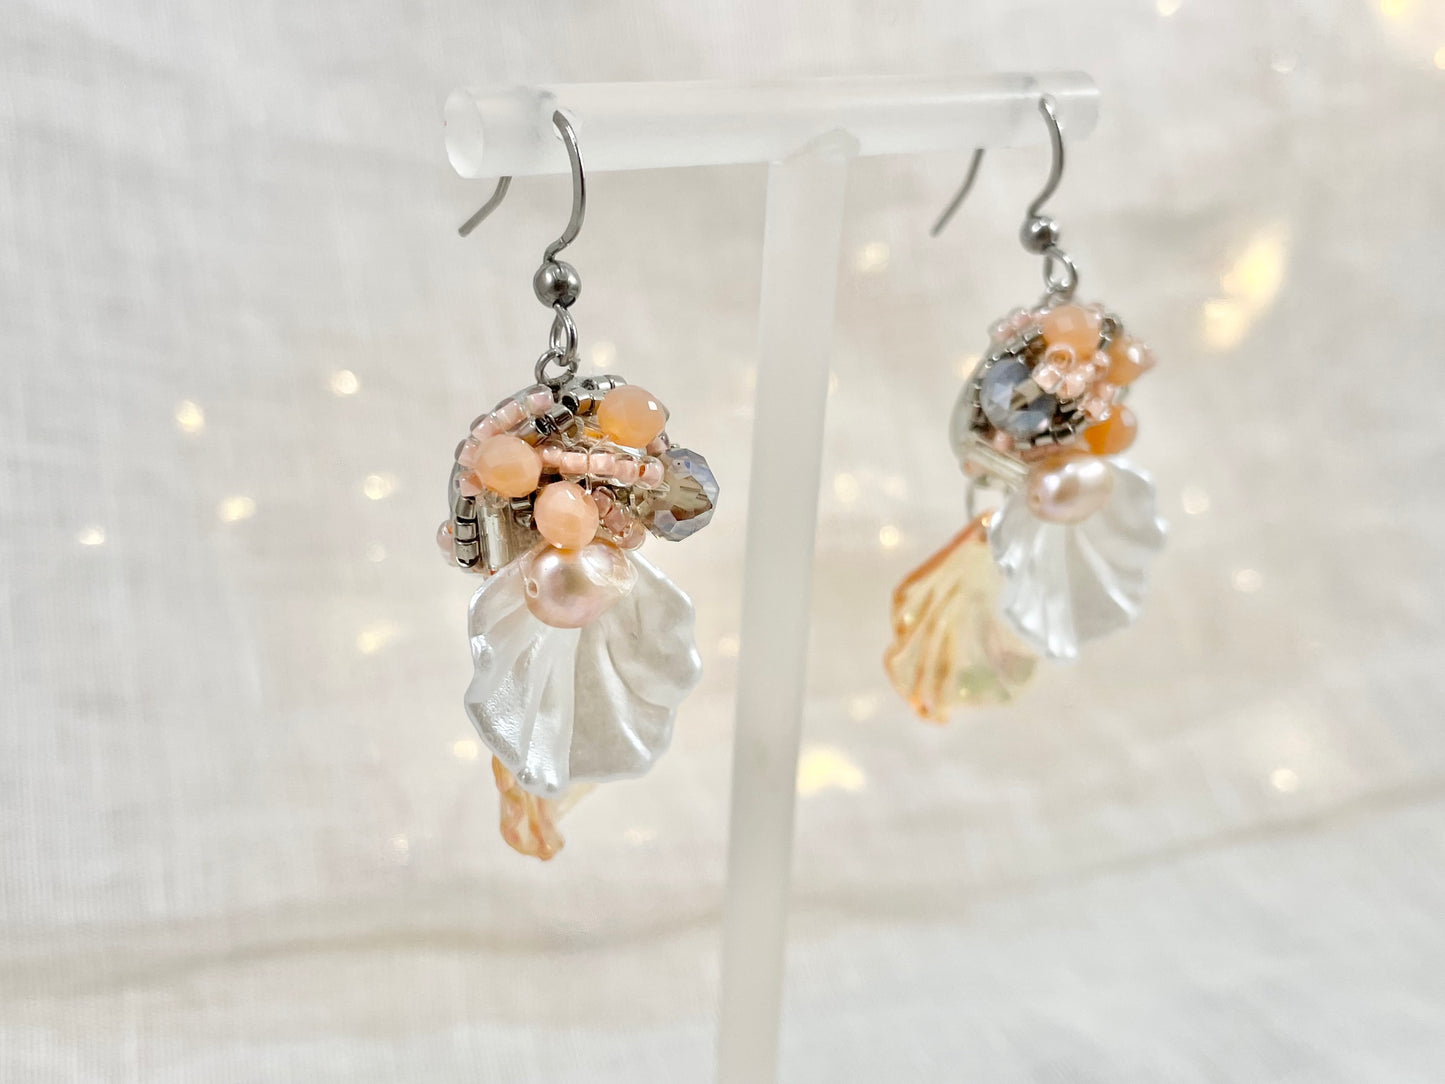 Hand beaded earrings - swing shells-